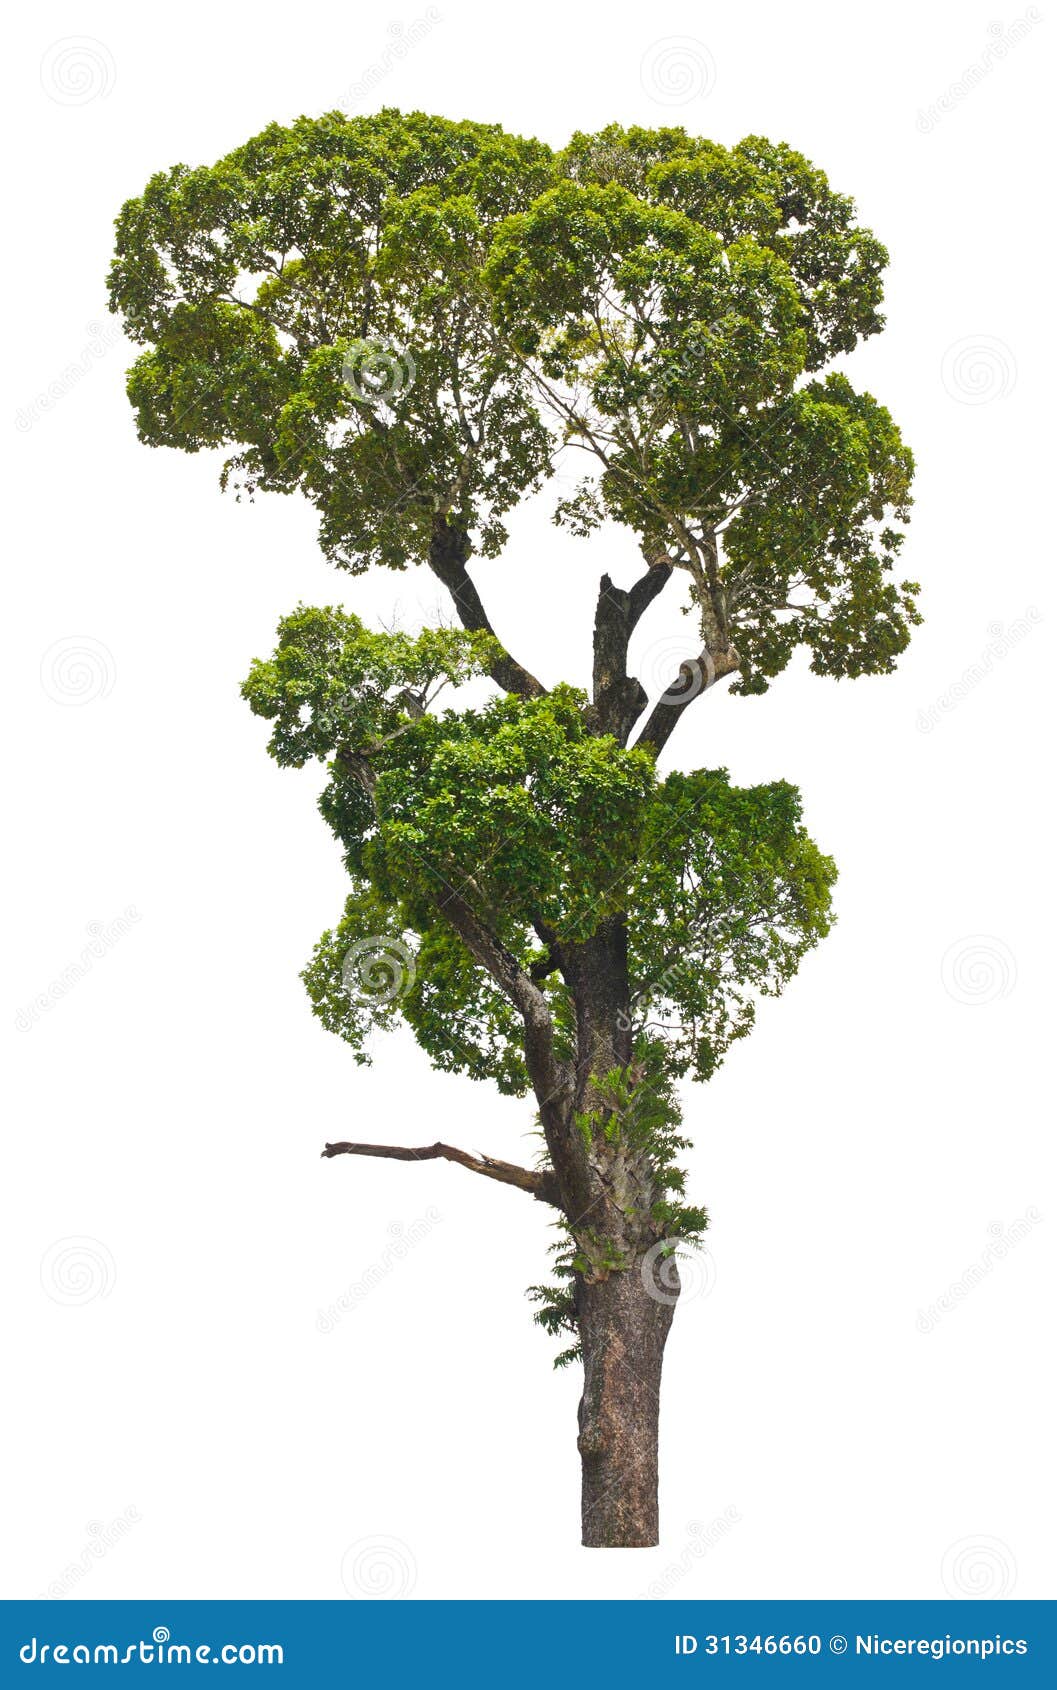 dipterocarpus alatus, tropical tree. stock photo - image